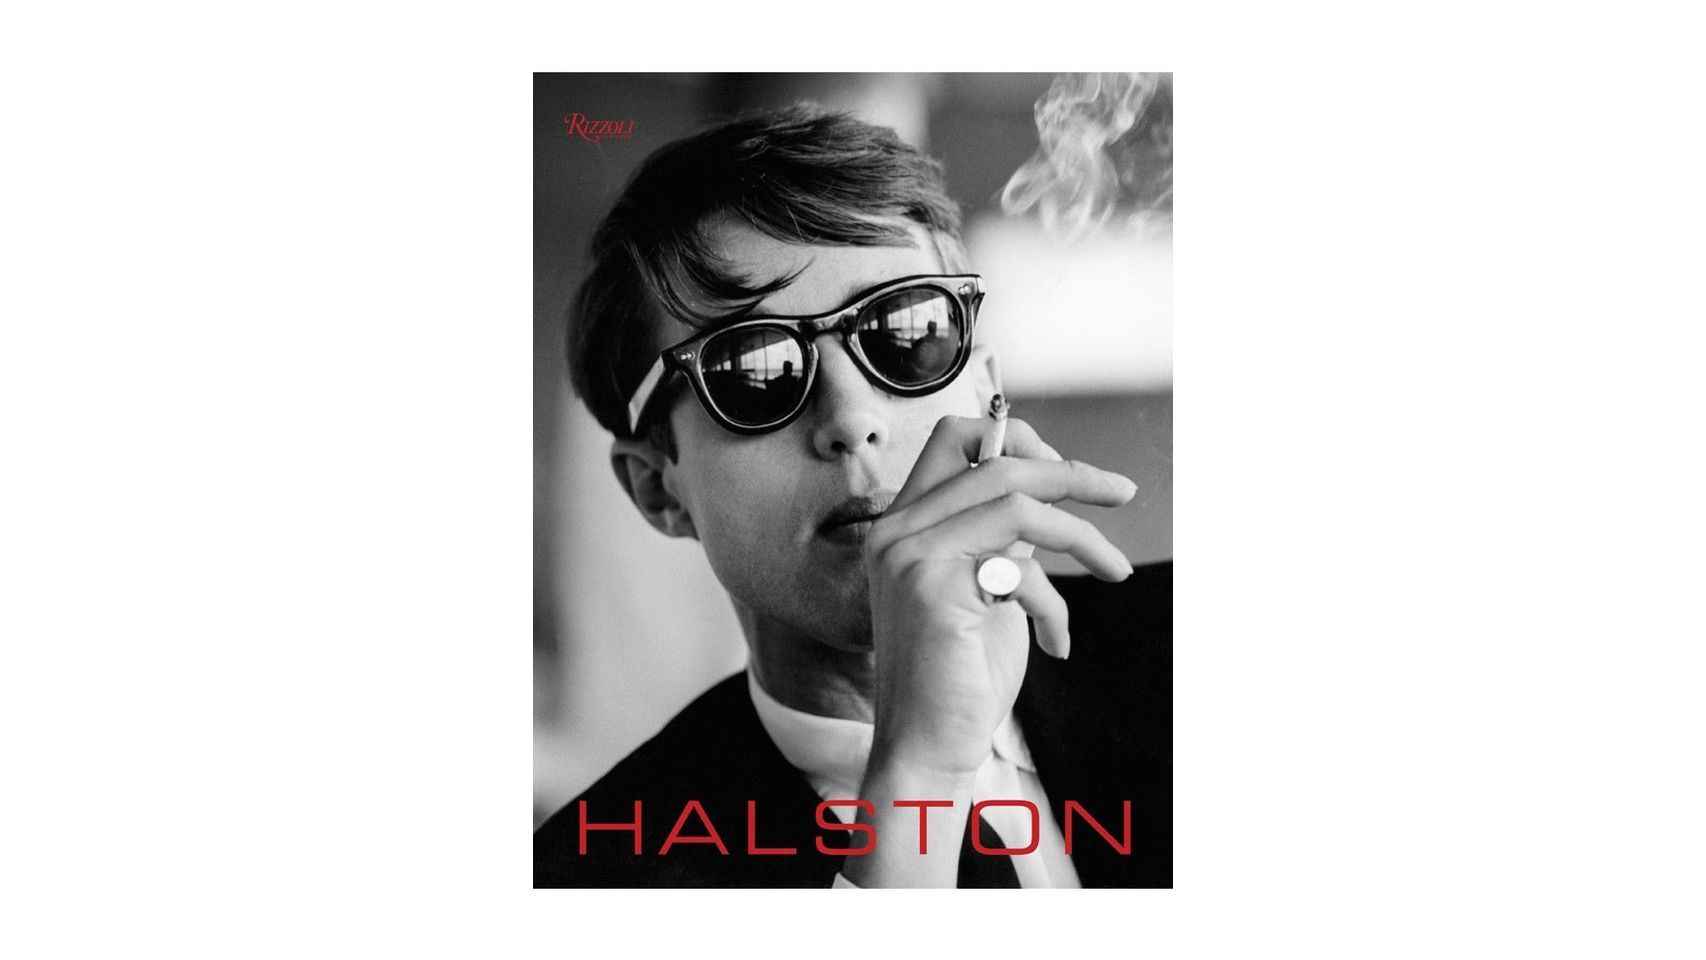 Portada del libro sobre Halston de la Editorial Rizzoli.